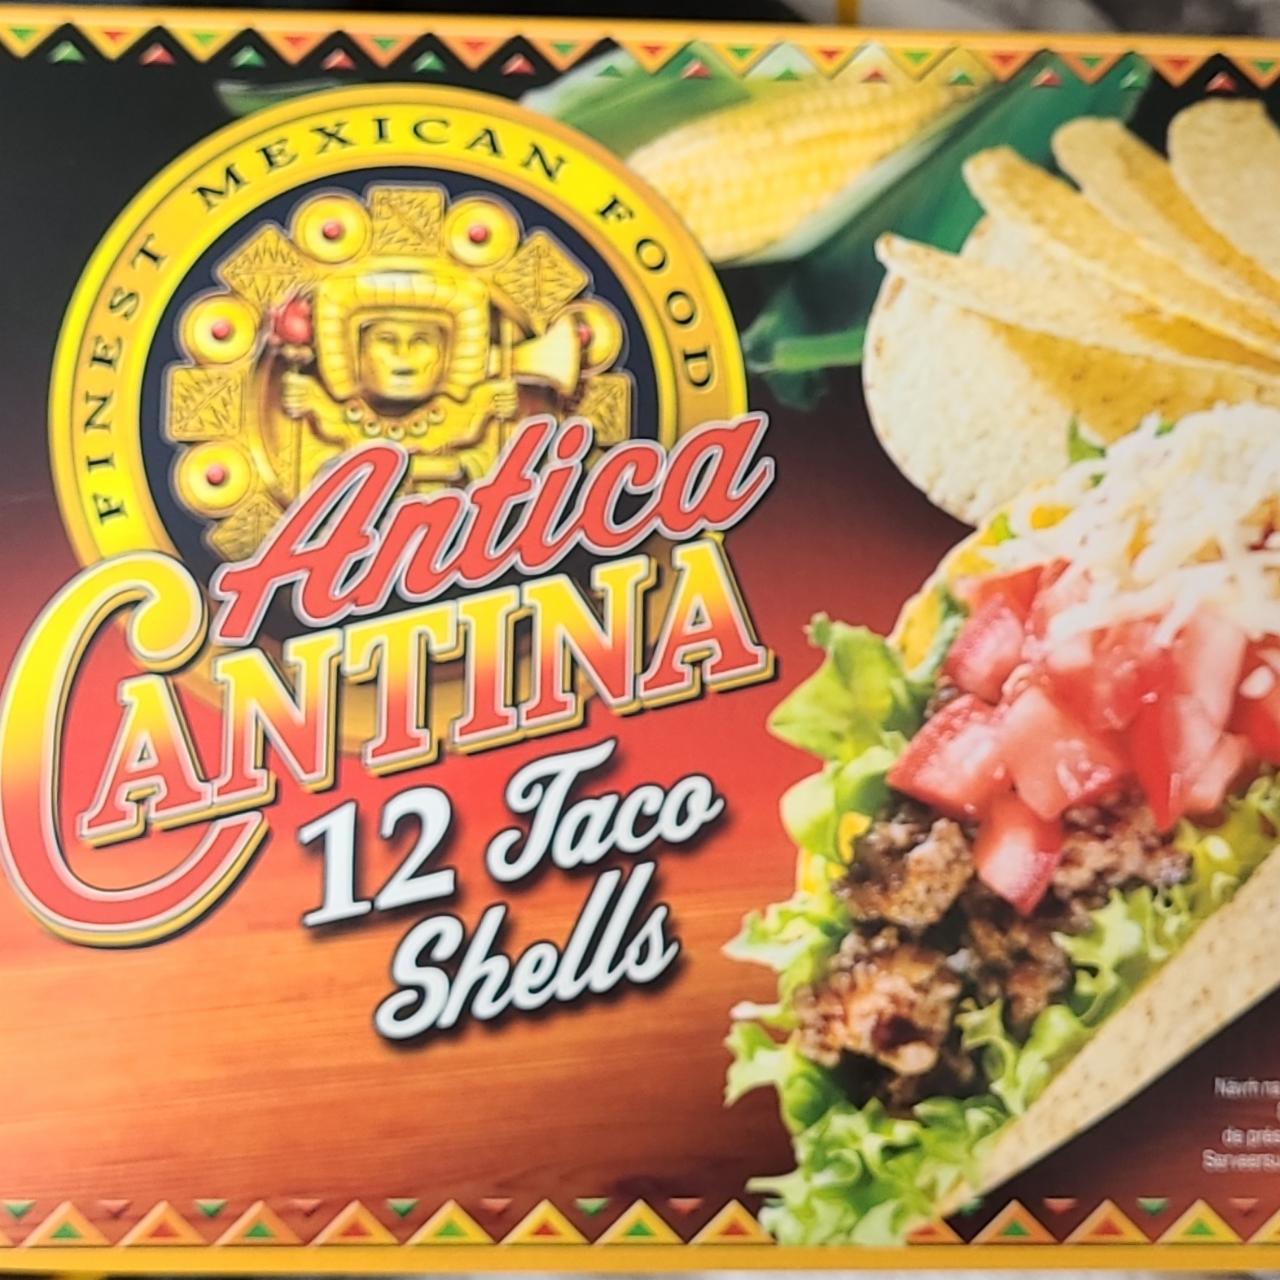 Zdjęcia - Antica Cantina 12 taco shells Finest Mexican Food